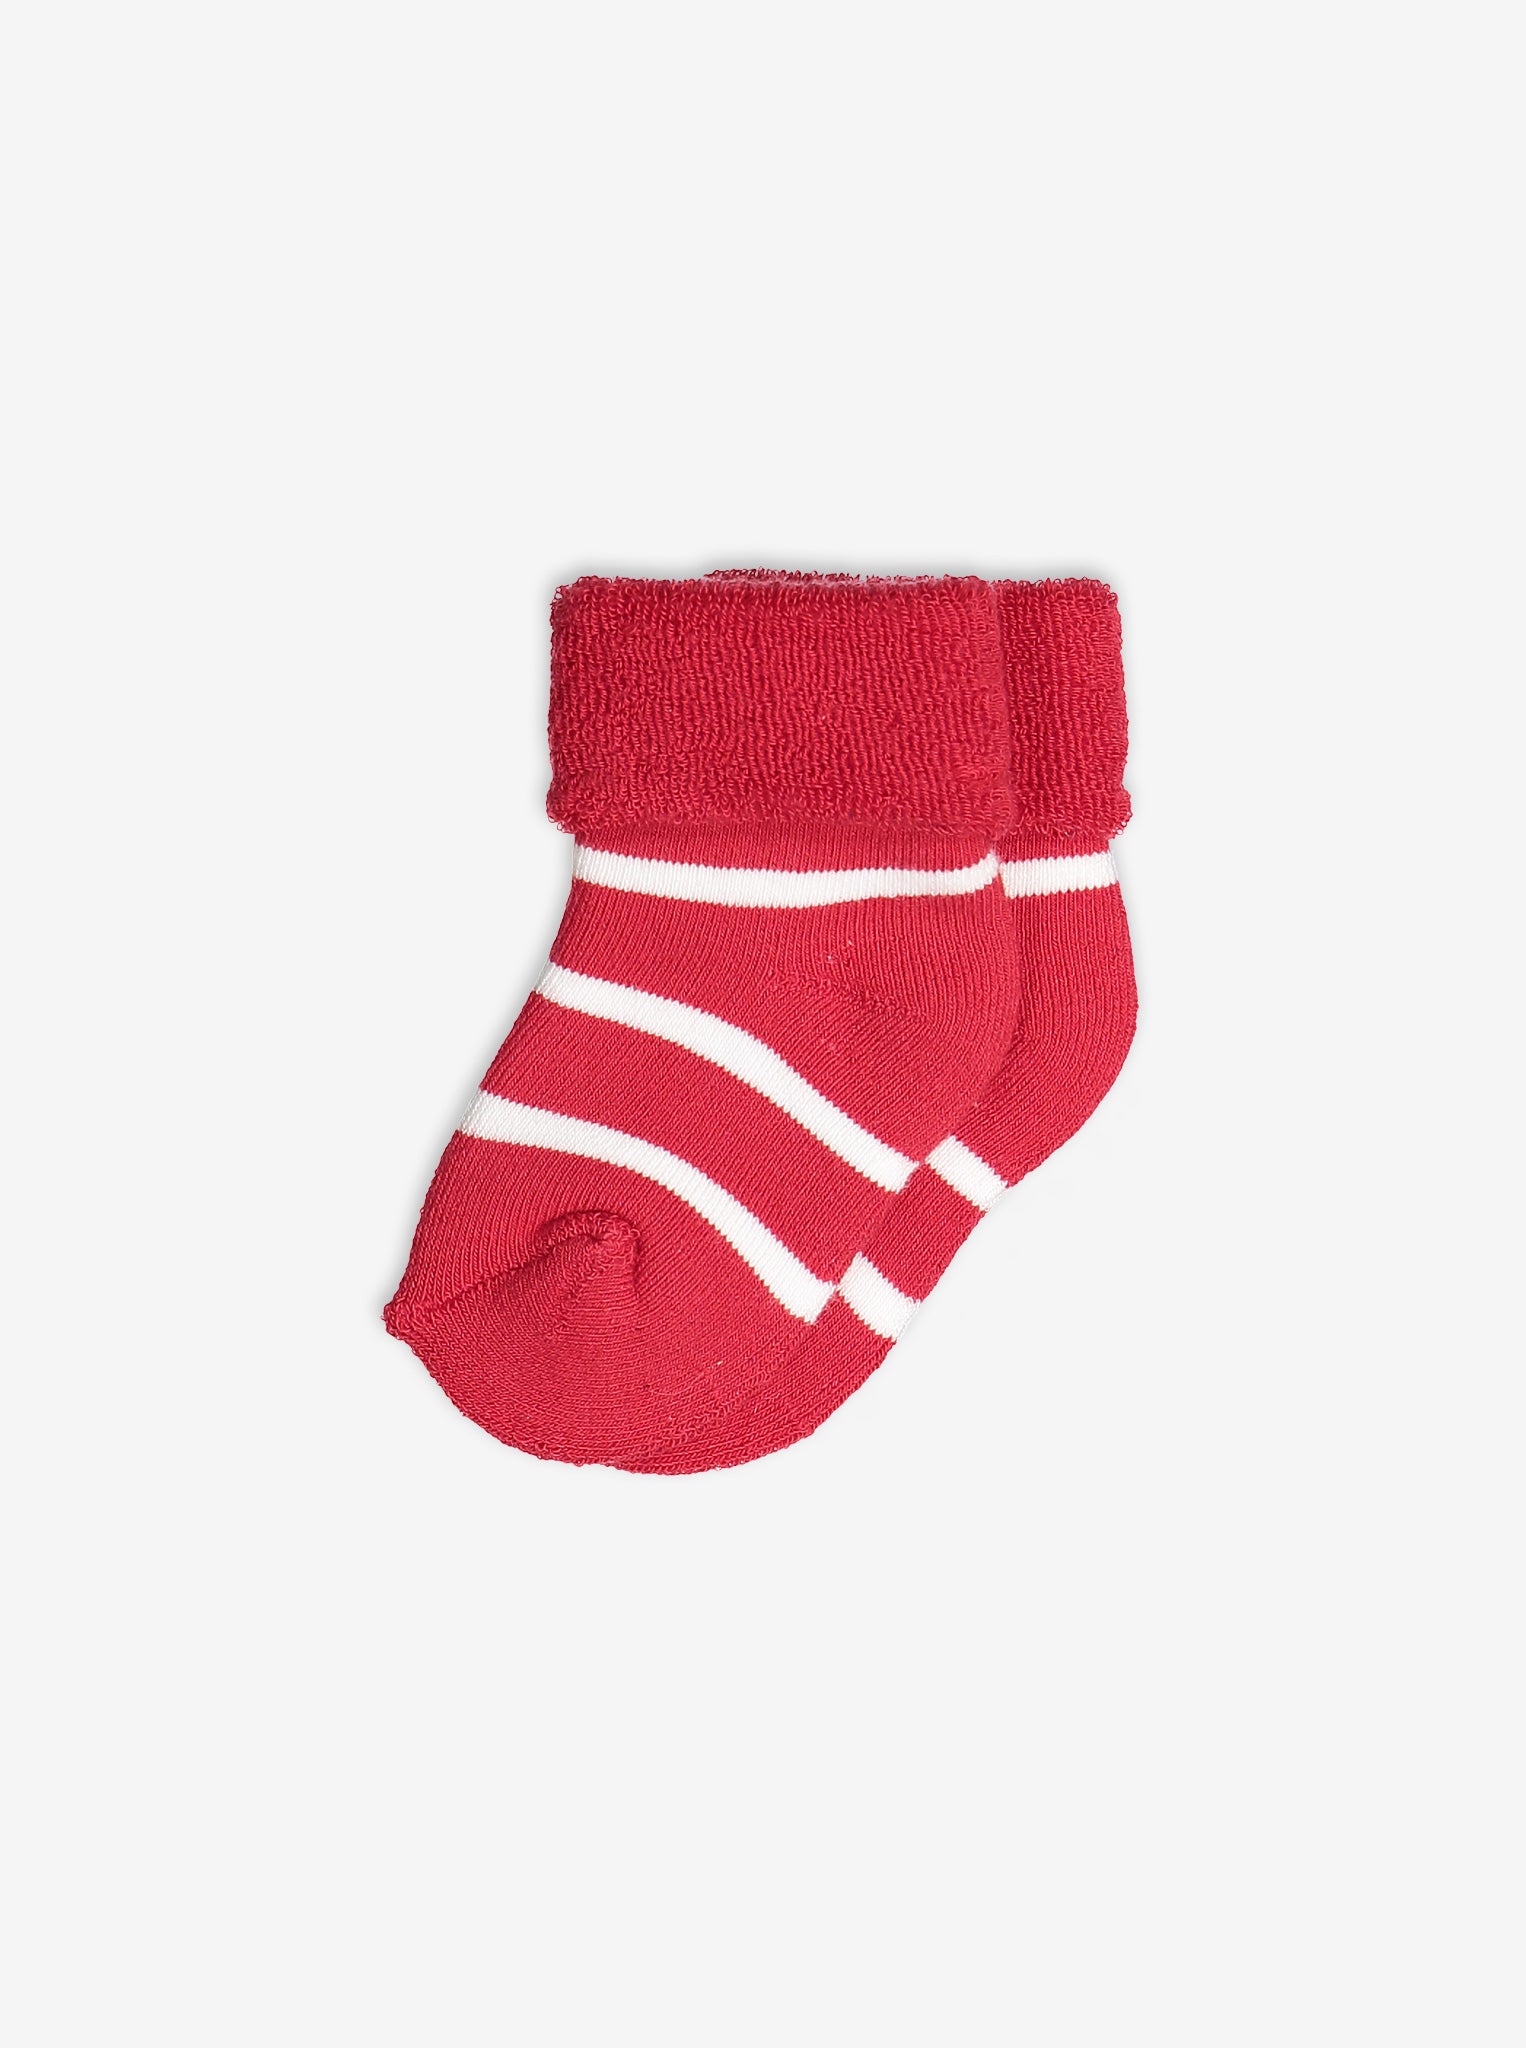 PO.P classic antislip newborn baby socks in red and white